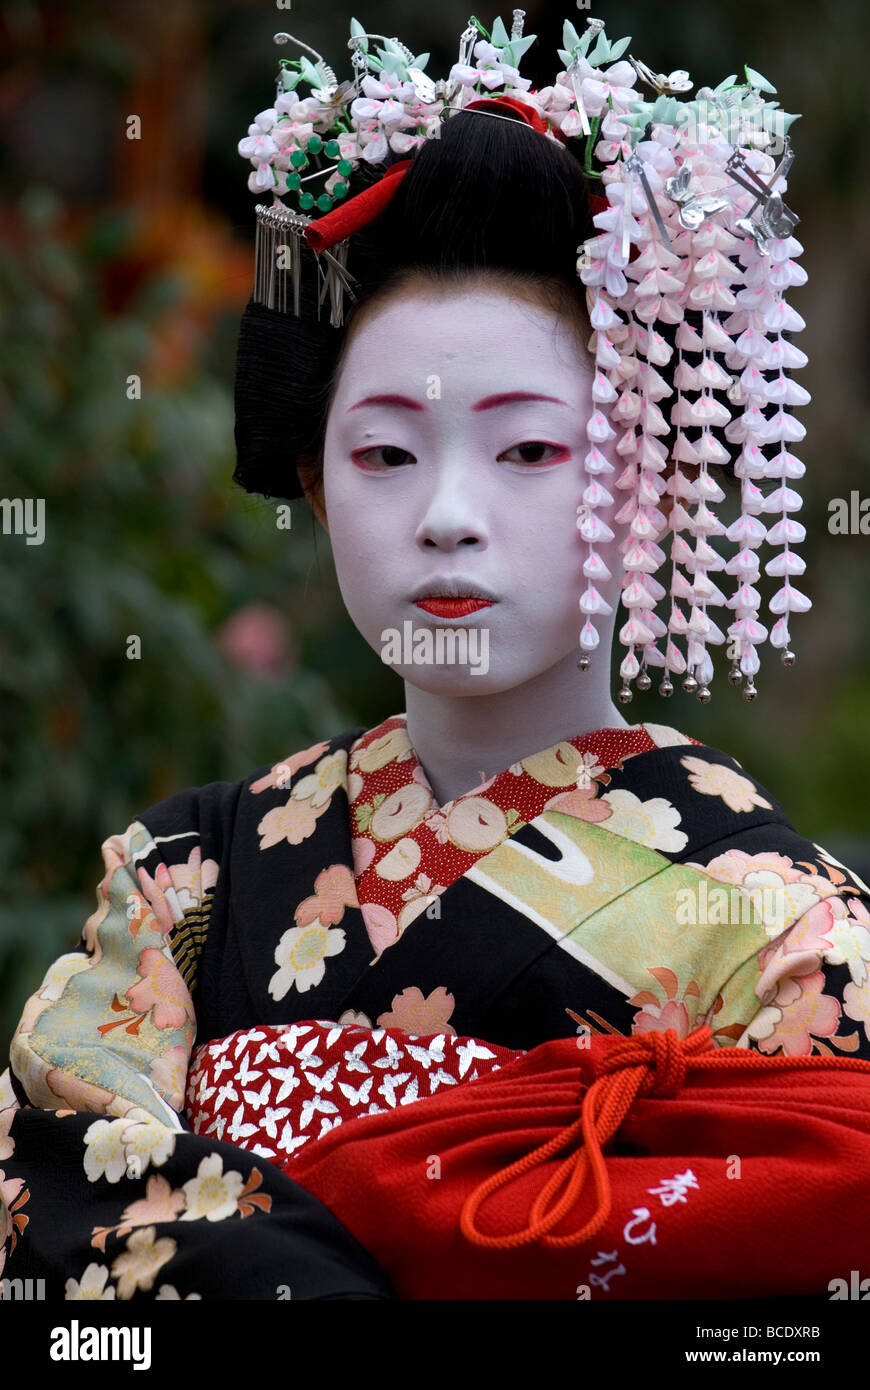 Un joven aprendiz de geisha o maiko con primavera kanzashi decoraciones en su cabello posa para una foto retrato Foto de stock